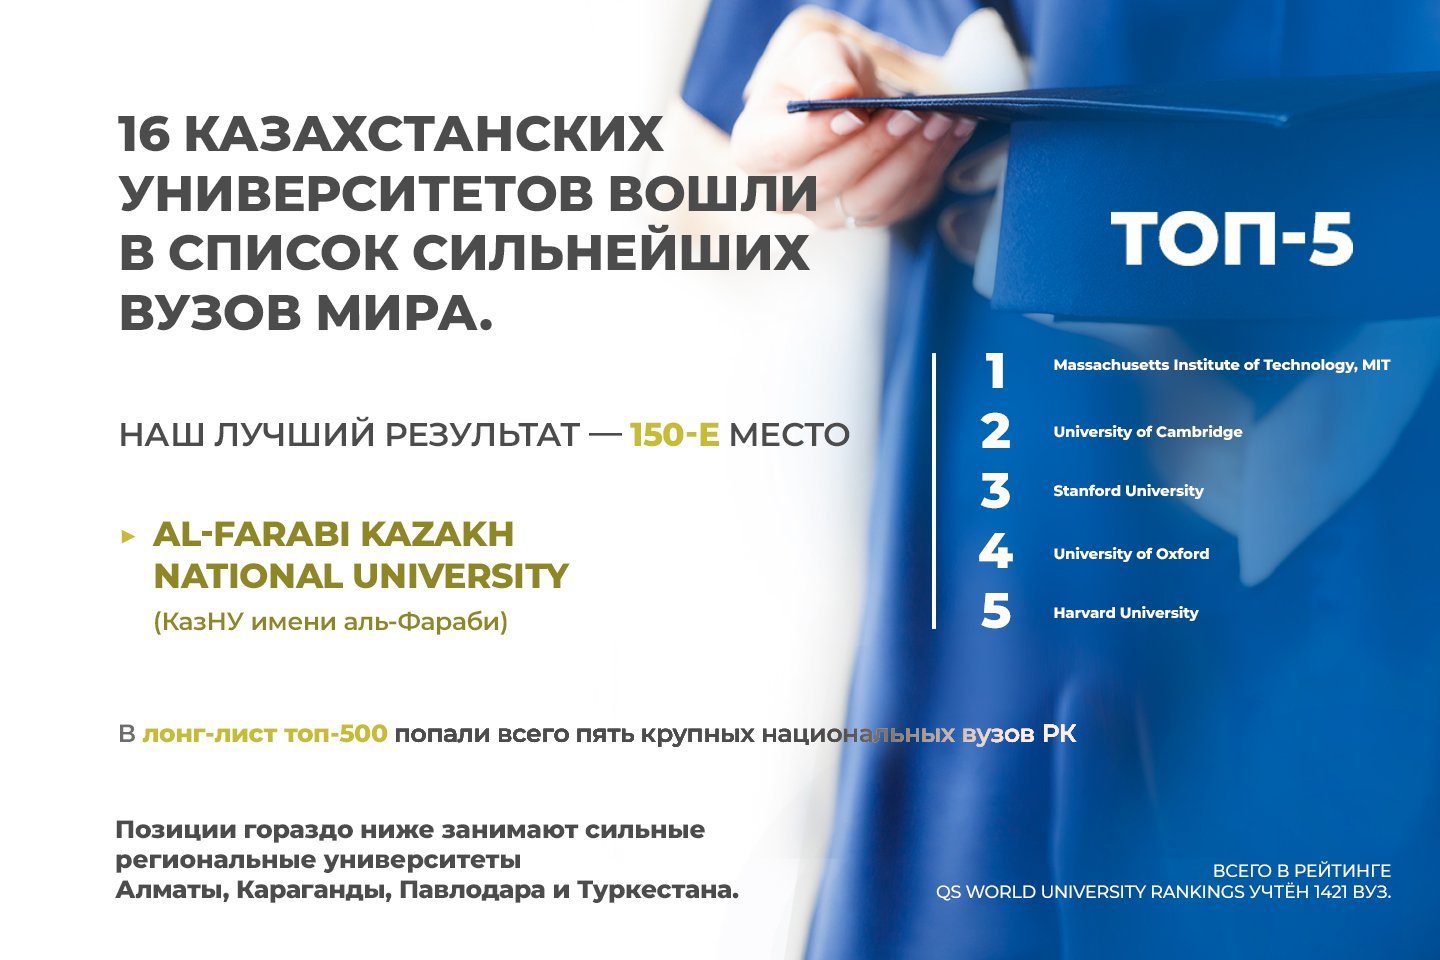 Новости мира / Интересные новости / 16 казахстанских университетов вошли в список сильнейших вузов мира